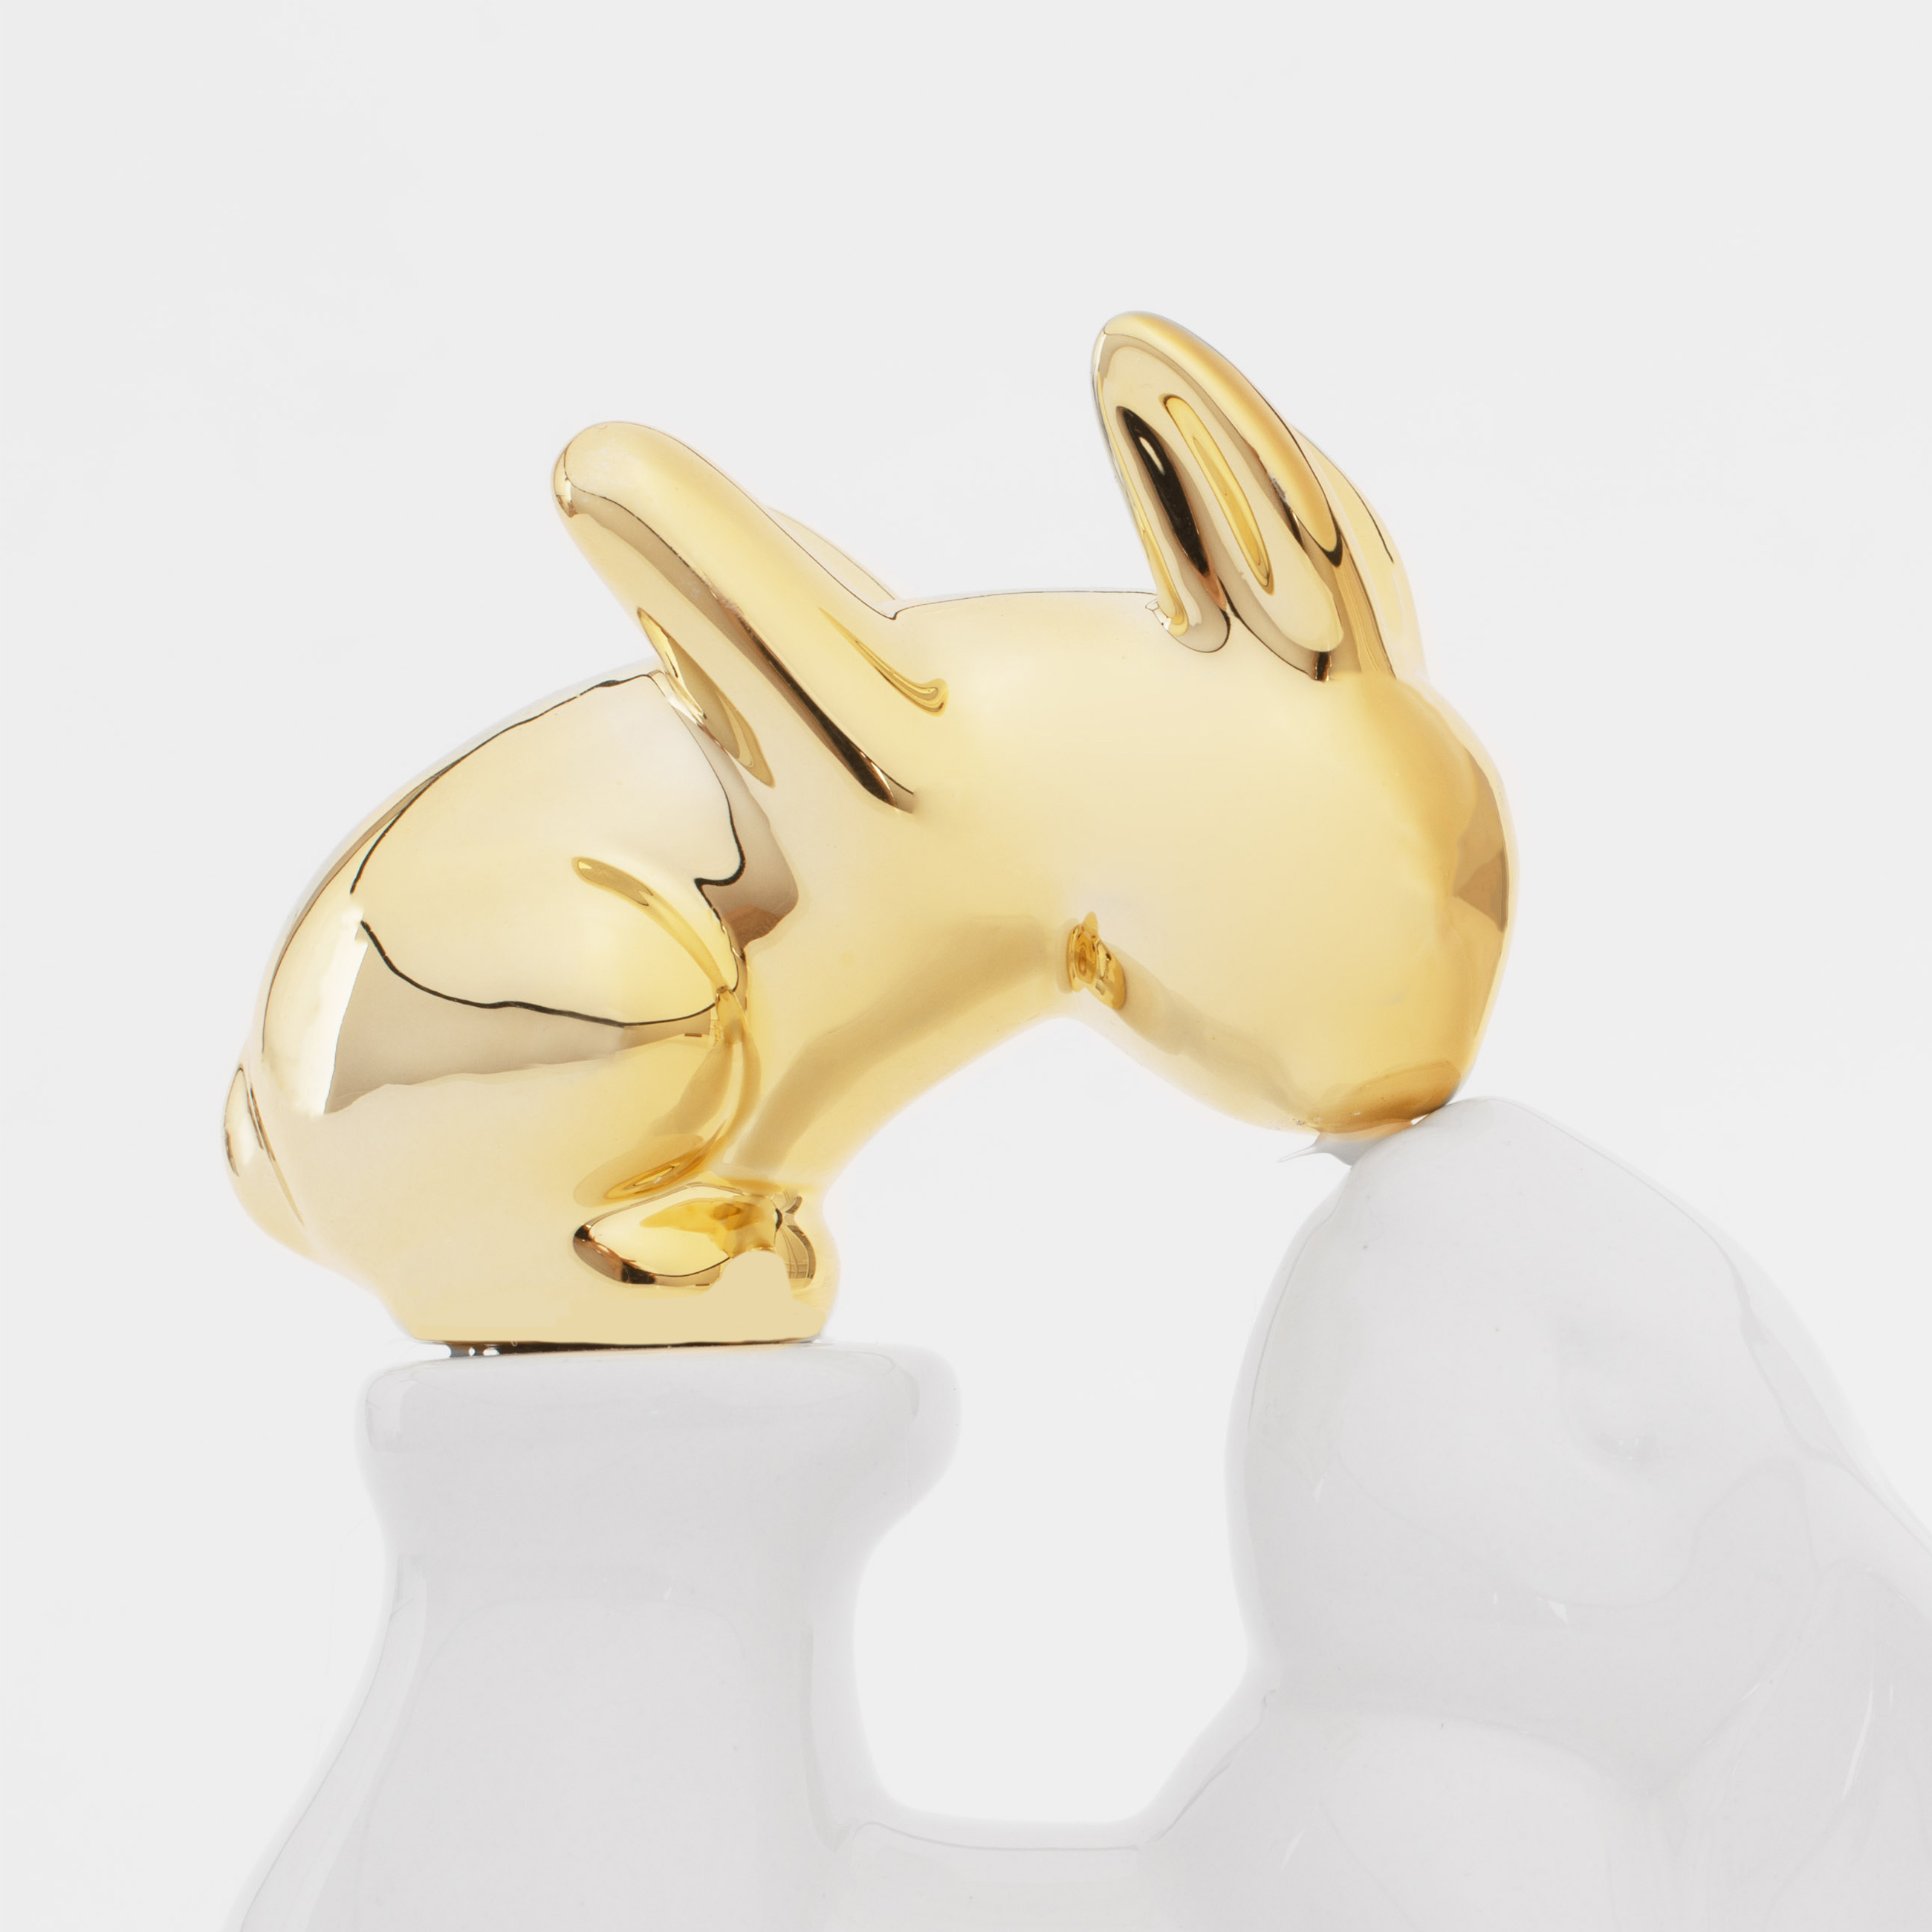 Статуэтка, 14 см, керамика, бело-золотистая, Крольчиха и крольчонок, Easter gold изображение № 2